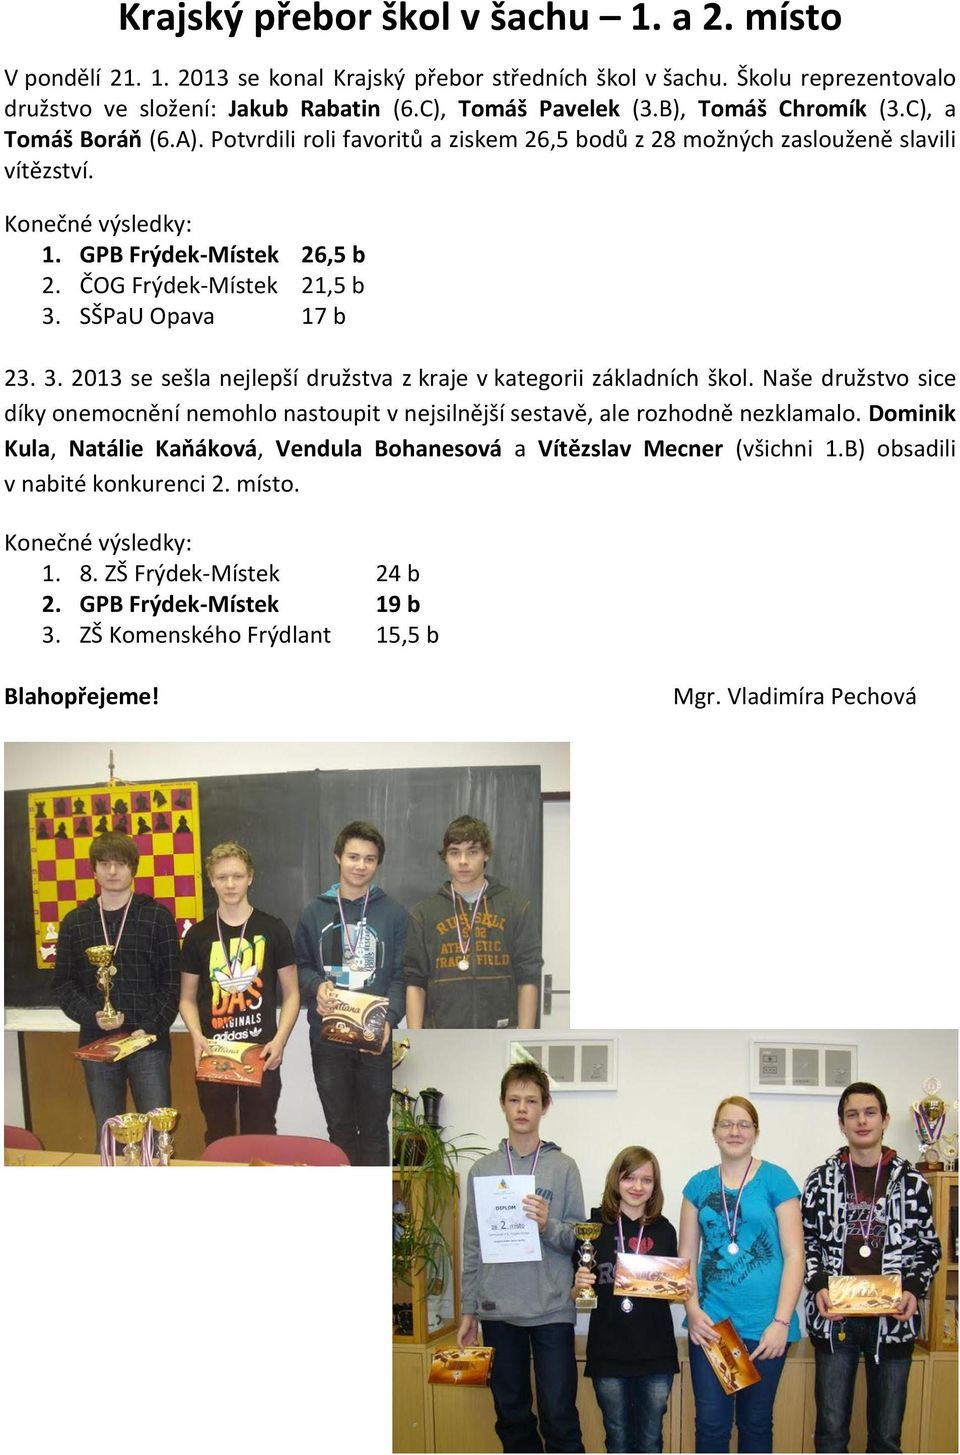 ČOG Frýdek-Místek 21,5 b 3. SŠPaU Opava 17 b 23. 3. 2013 se sešla nejlepší družstva z kraje v kategorii základních škol.